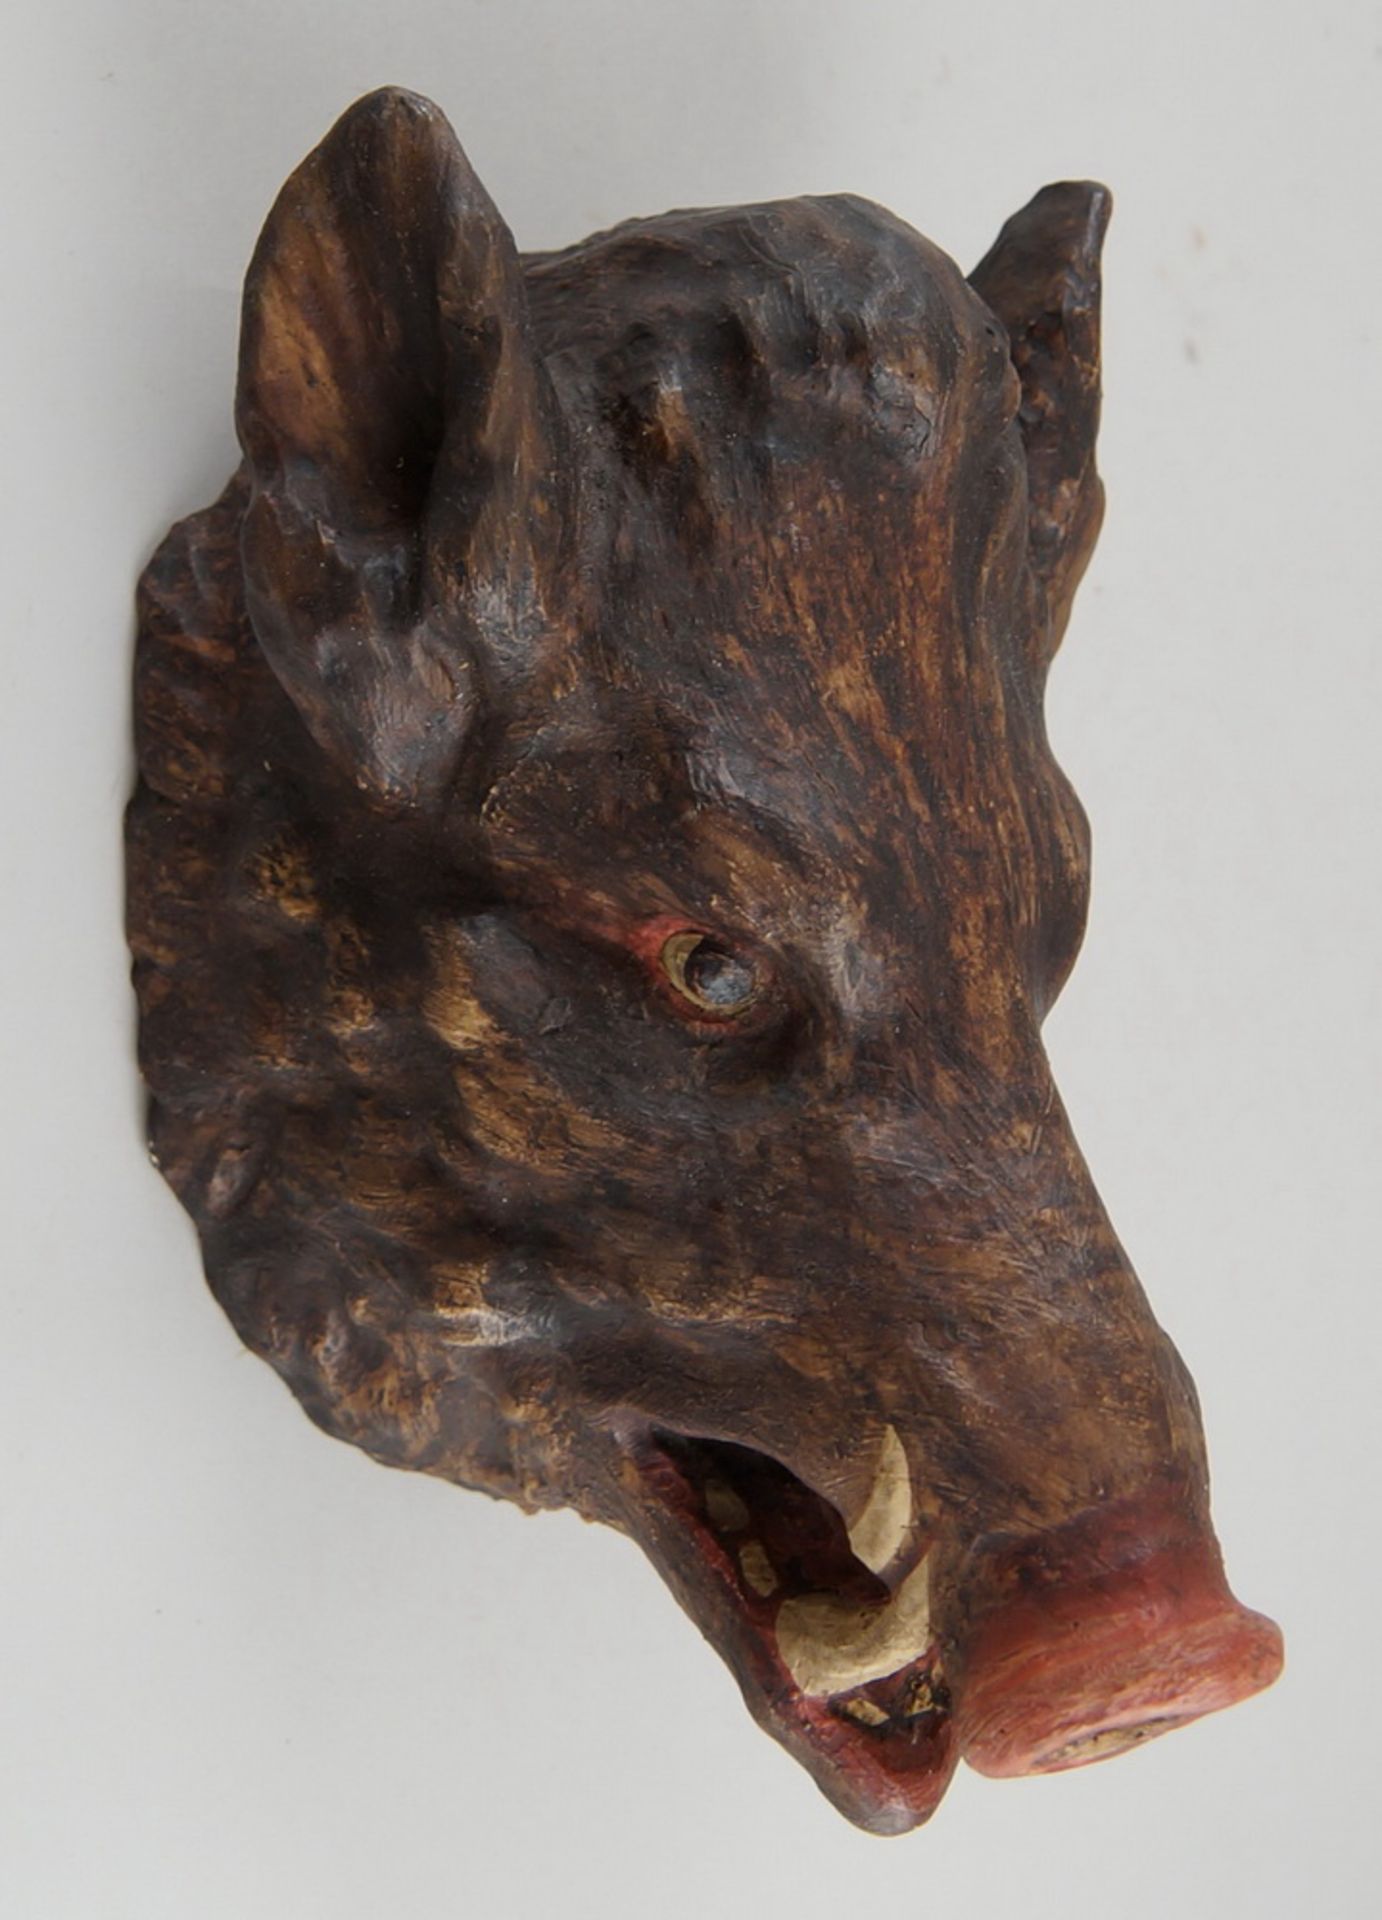 Saukopf / Wildschwein / Eber, Holz geschnitzt und gefasst, auf Brett zum hängen, H 27 cm